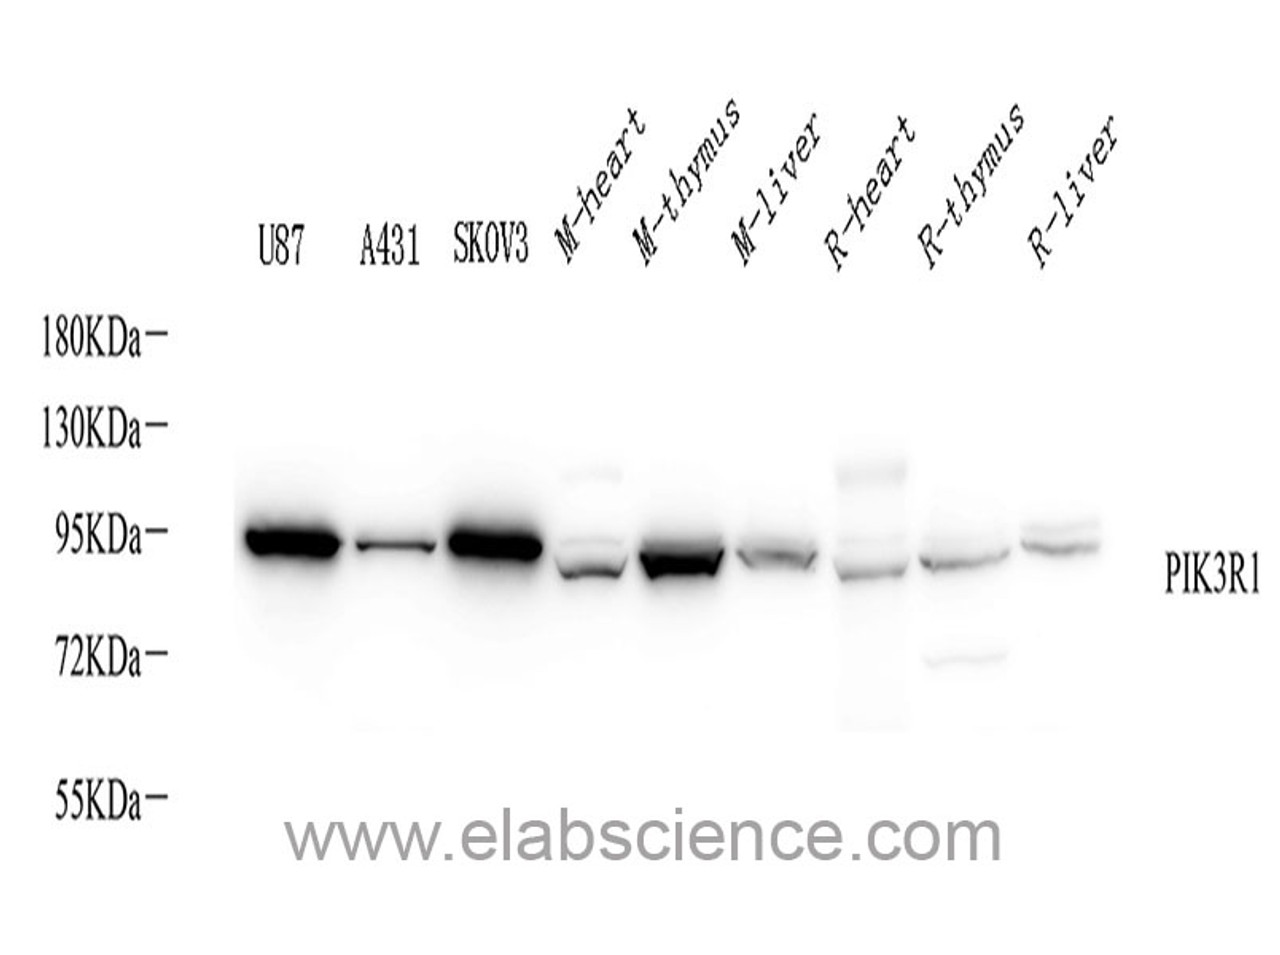 Western Blot analysis of various samples using PI 3 kinase p85 alpha Polyclonal Antibody at dilution of 1:1000.